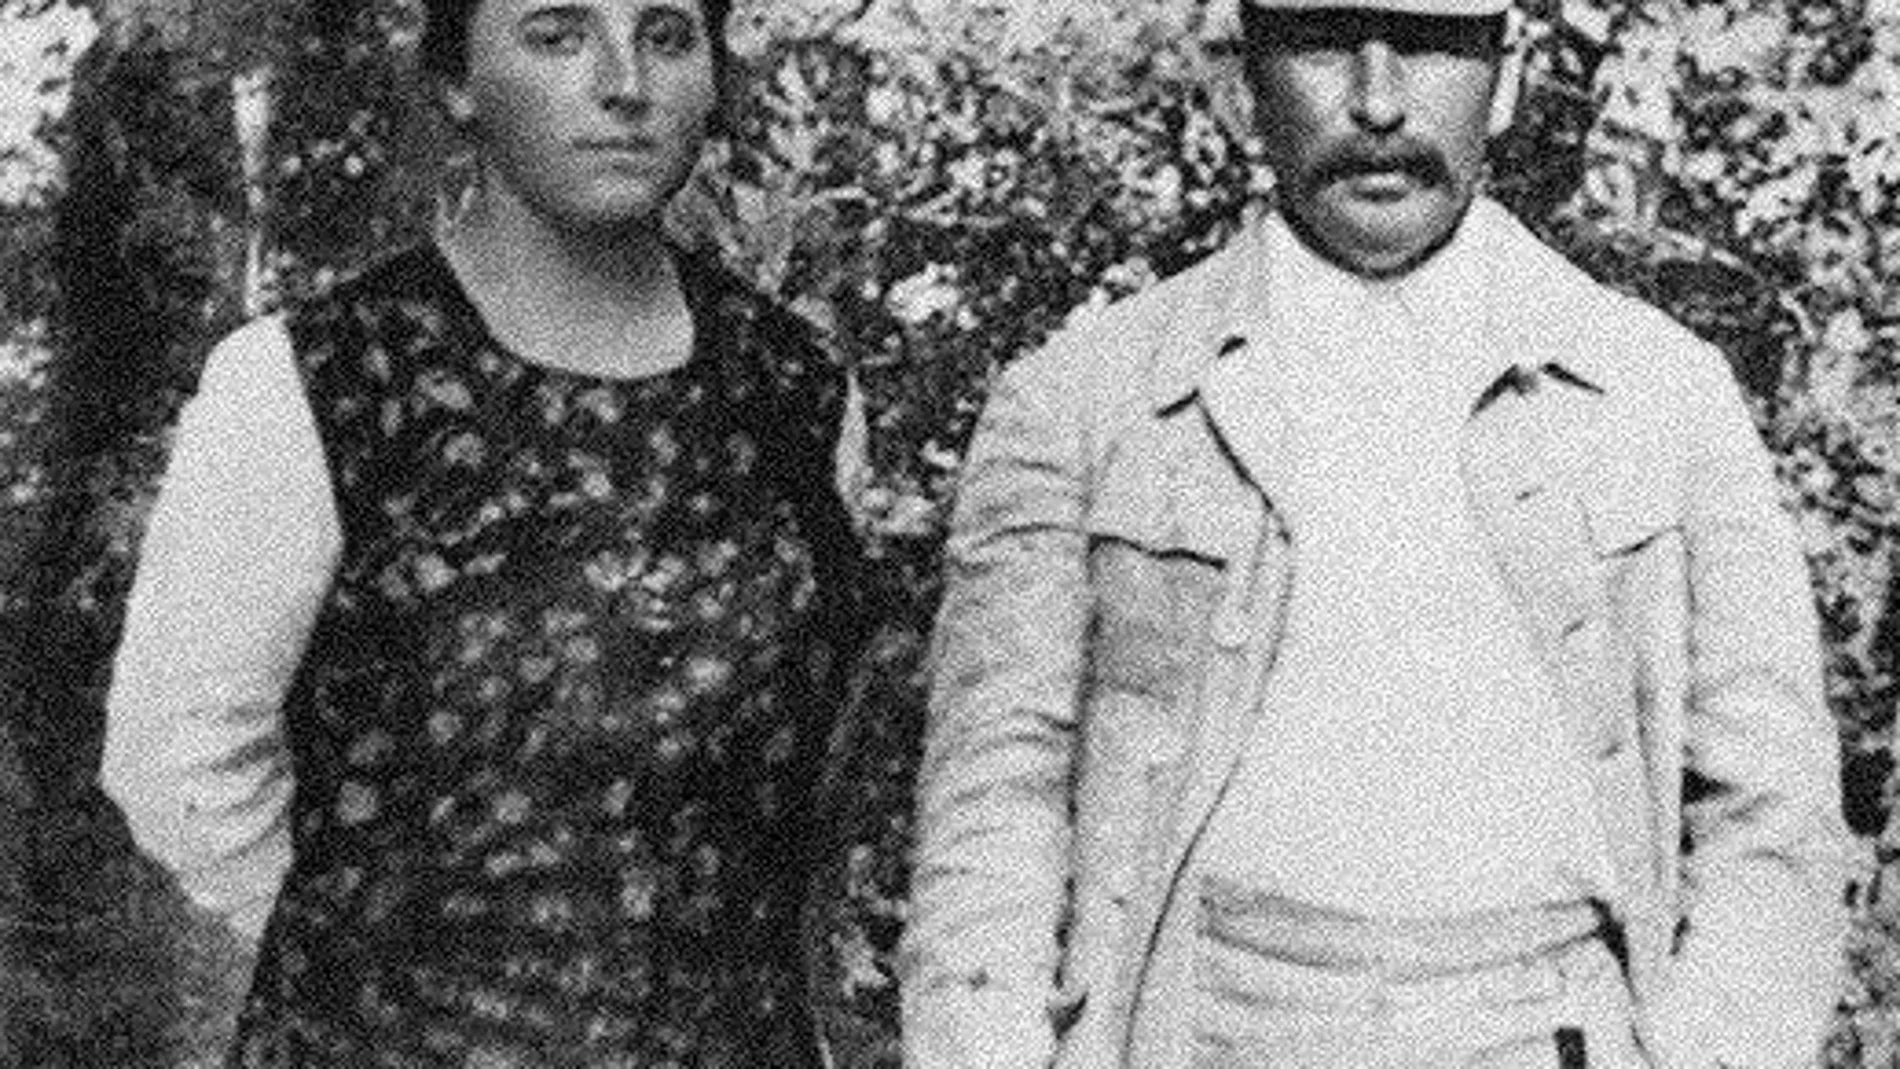 El líder soviético Josef Stalin con su segunda esposa, Nadezhda Alliluyeva